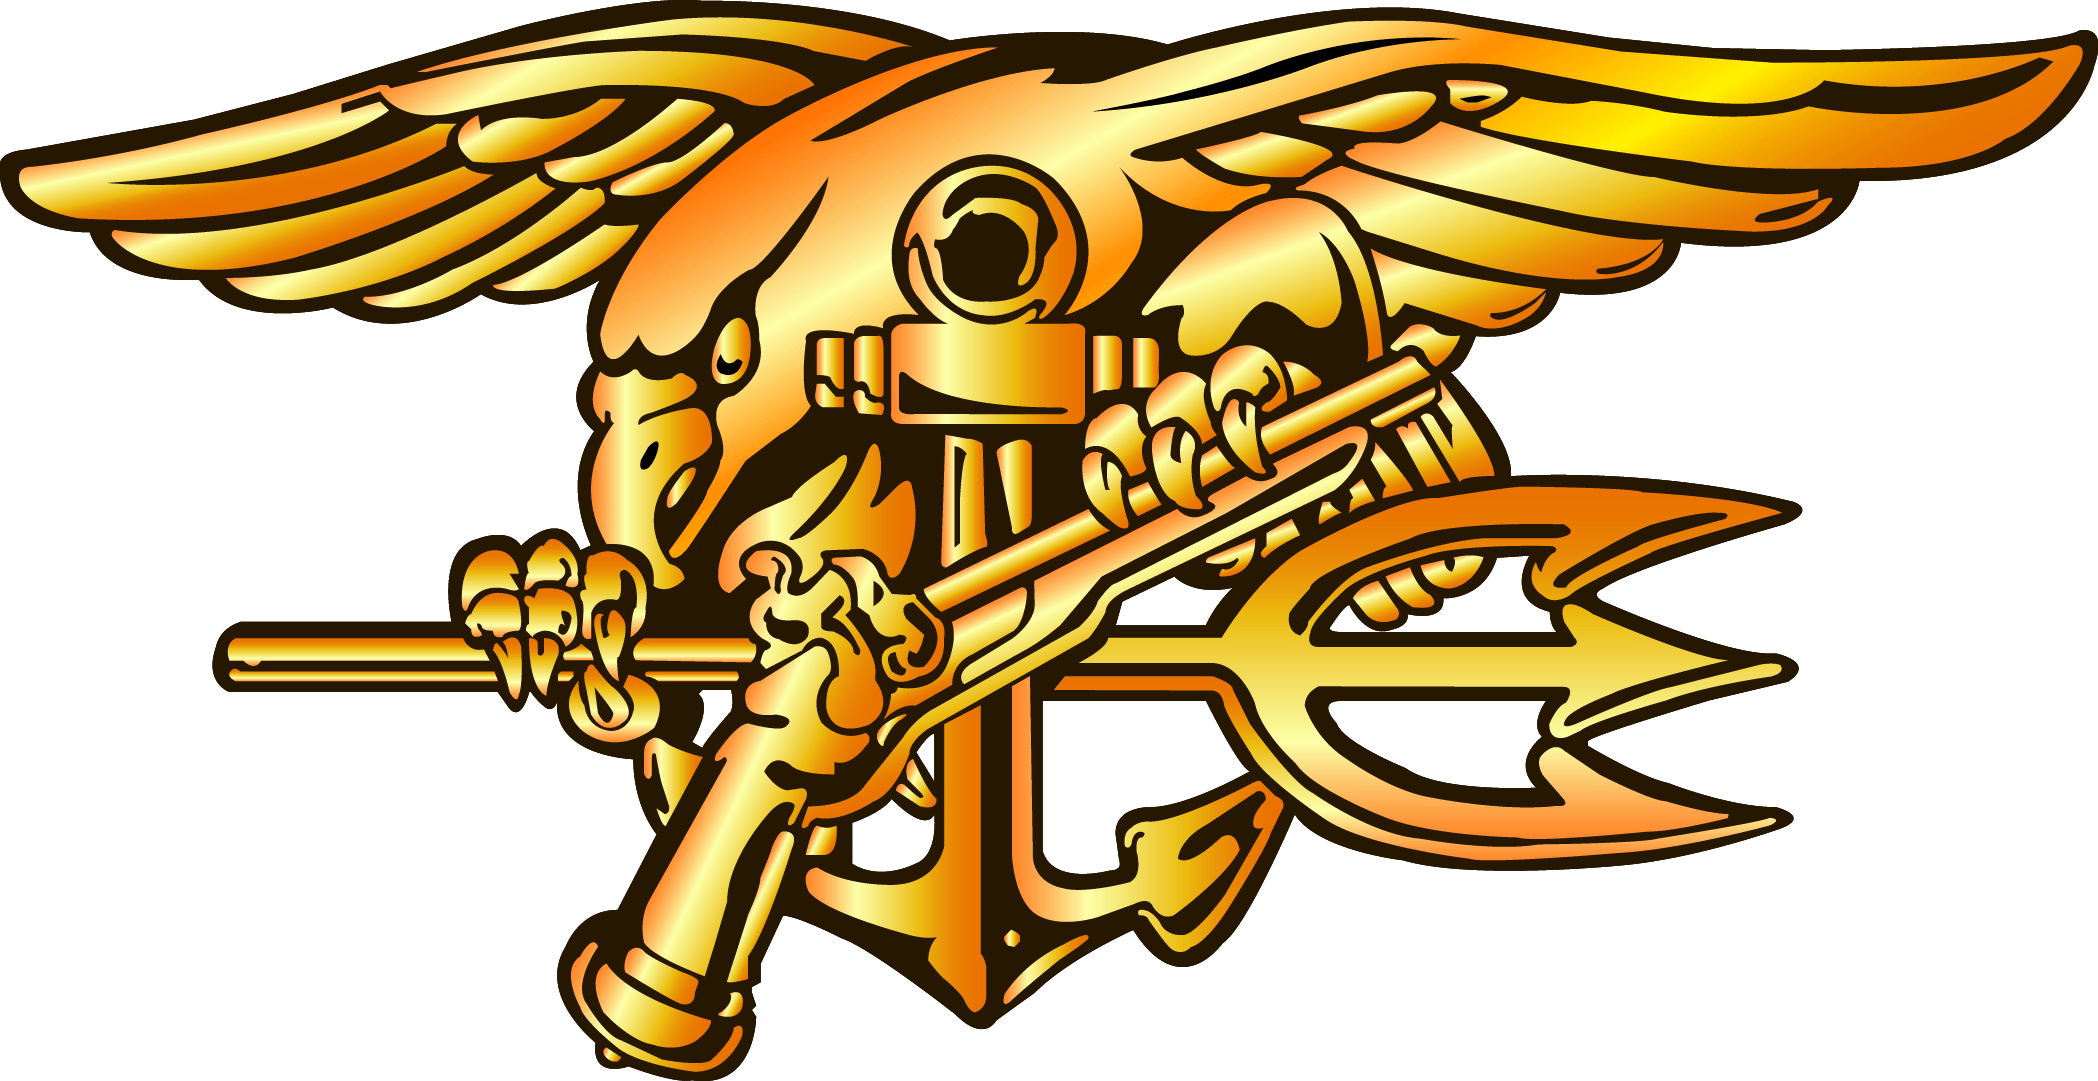 Seals Logo - Navy SEAL Trident Logo N2 free image